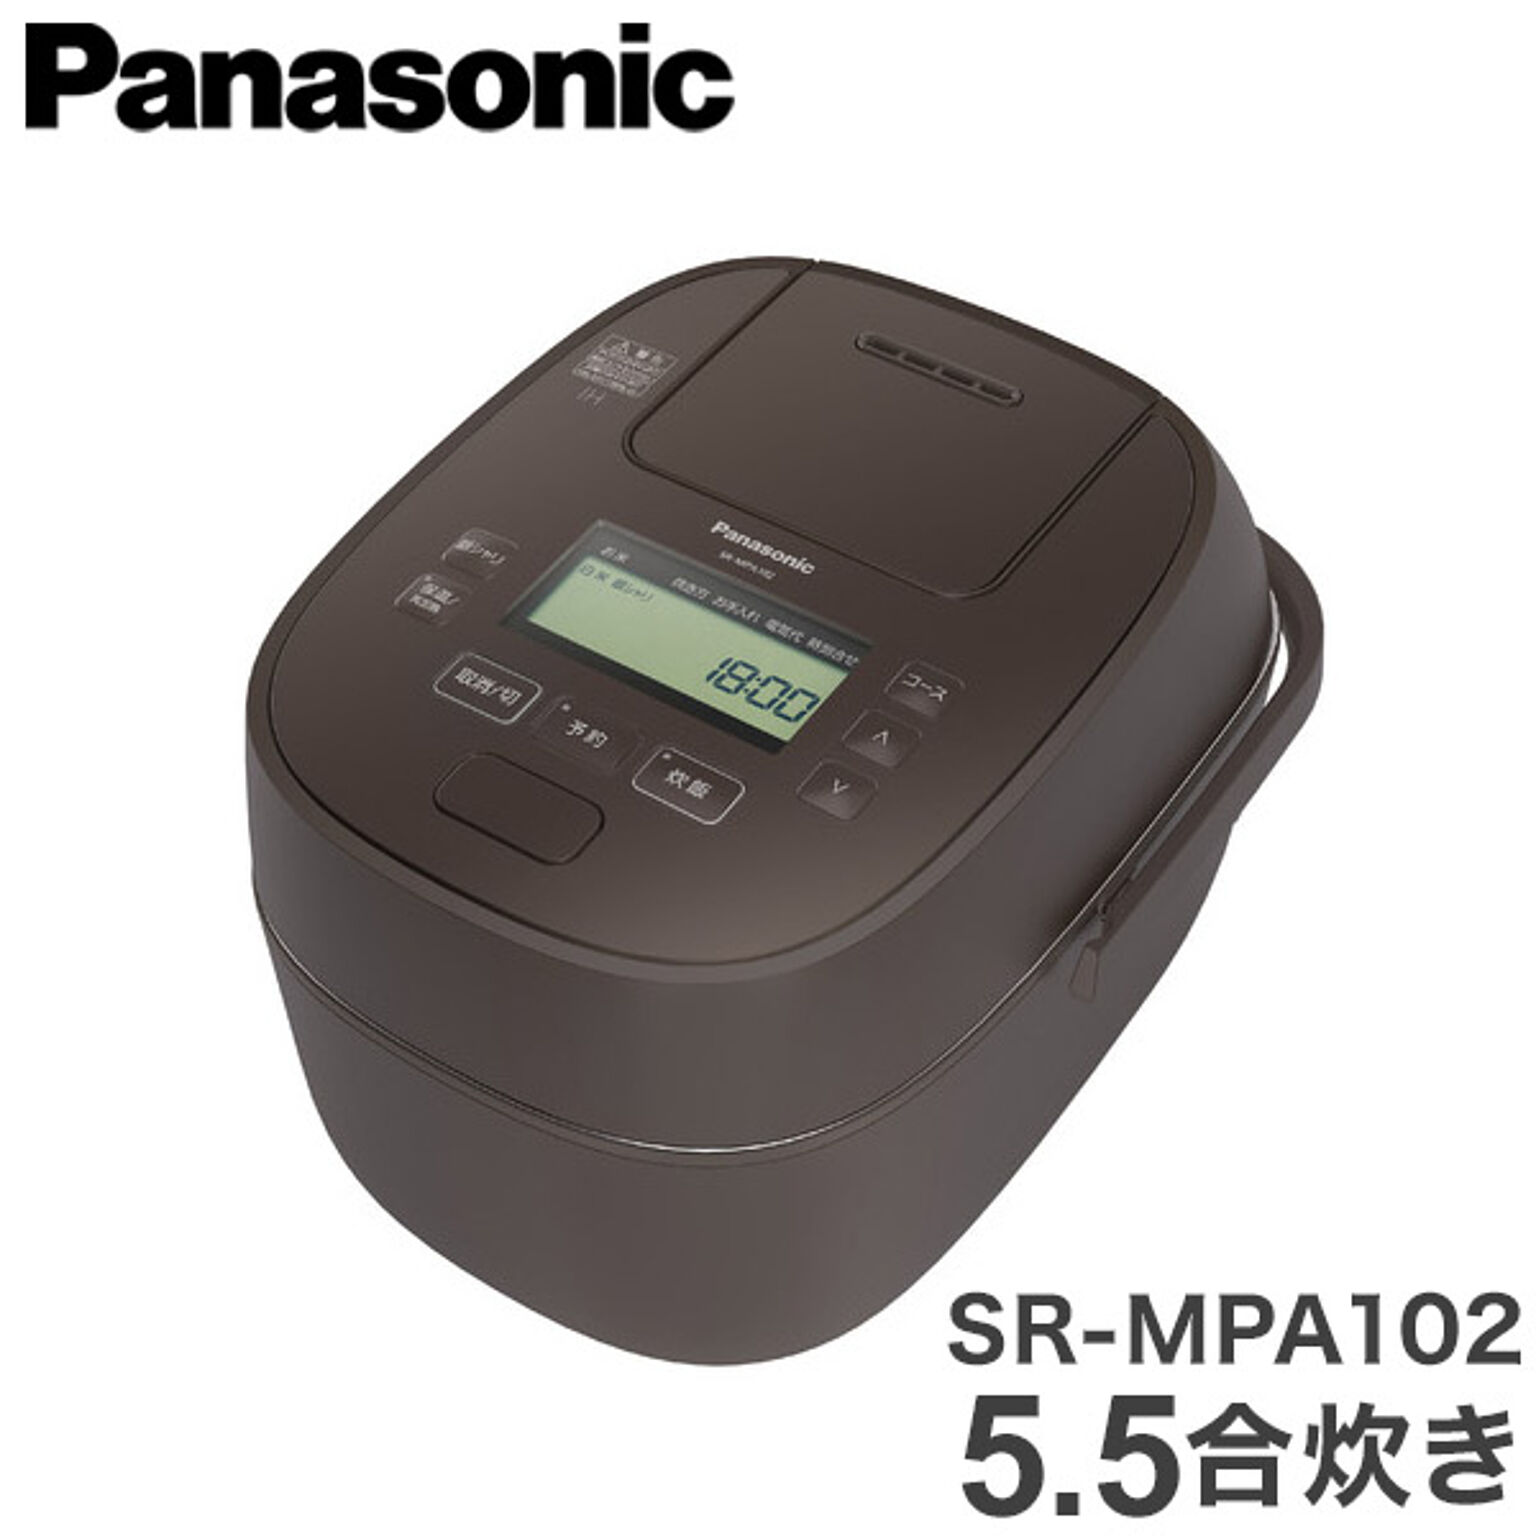 パナソニック 可変圧力IHジャー炊飯器 おどり炊き 5.5合炊き SR-MPA102-T ブラウン Panasonic(代引不可)